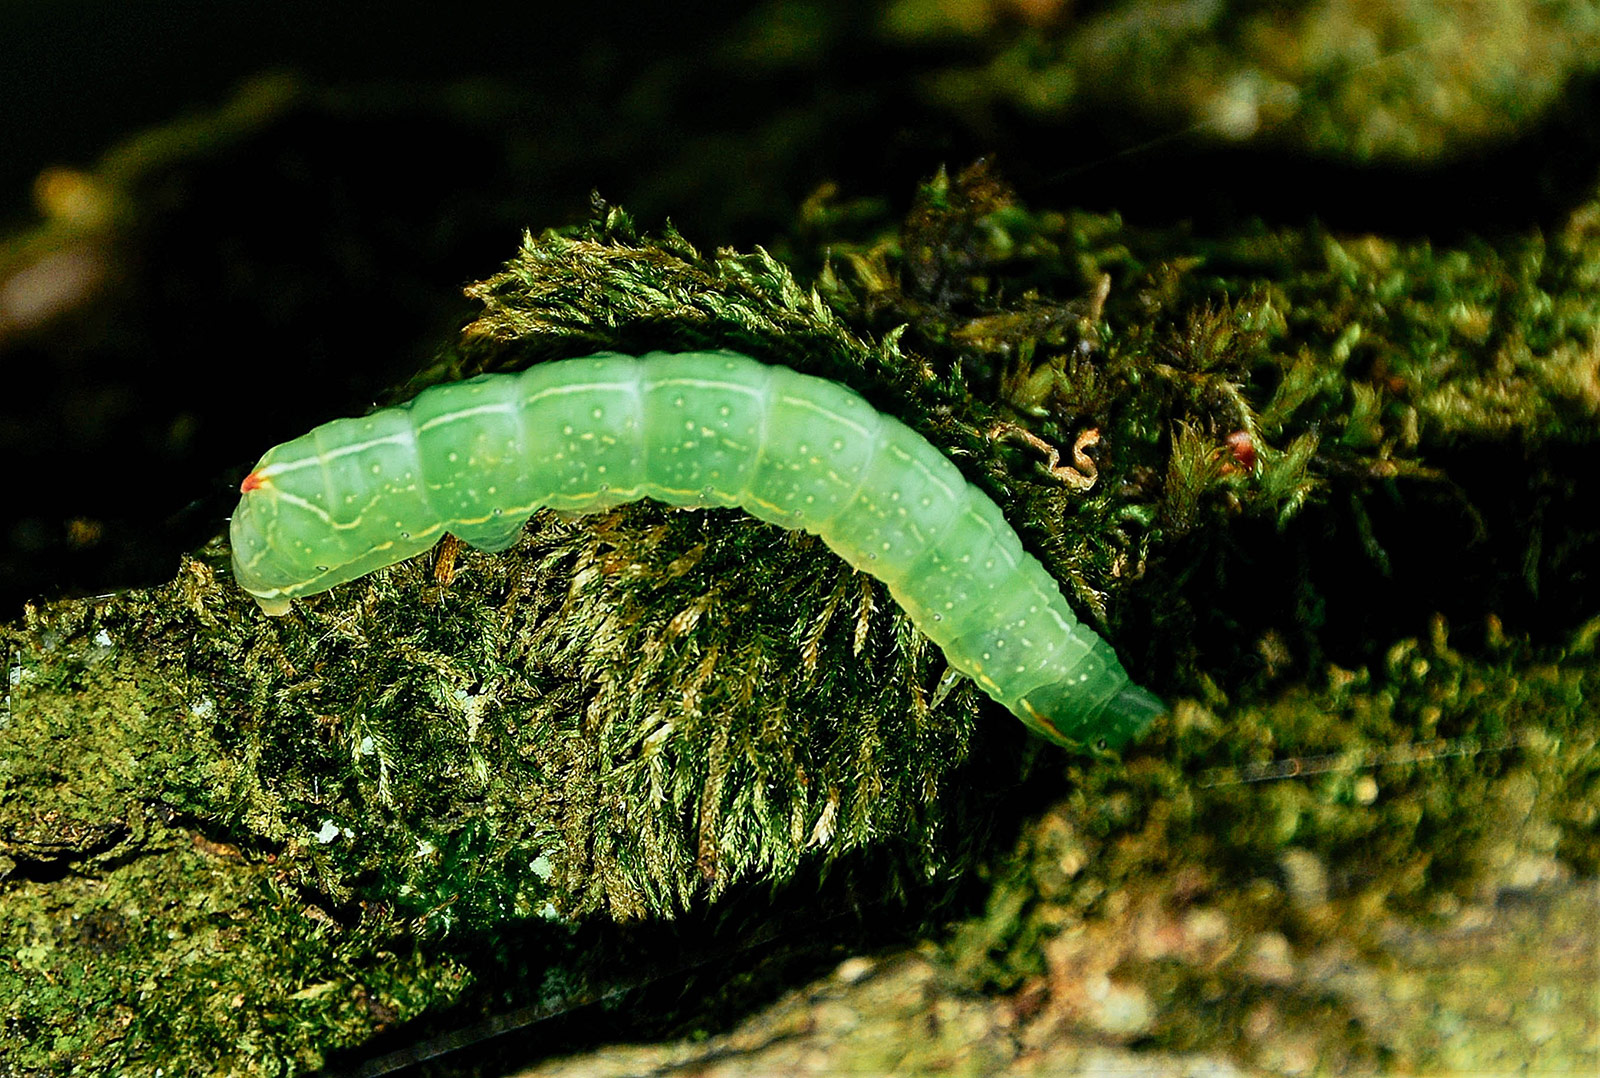 Winter moth caterpillar